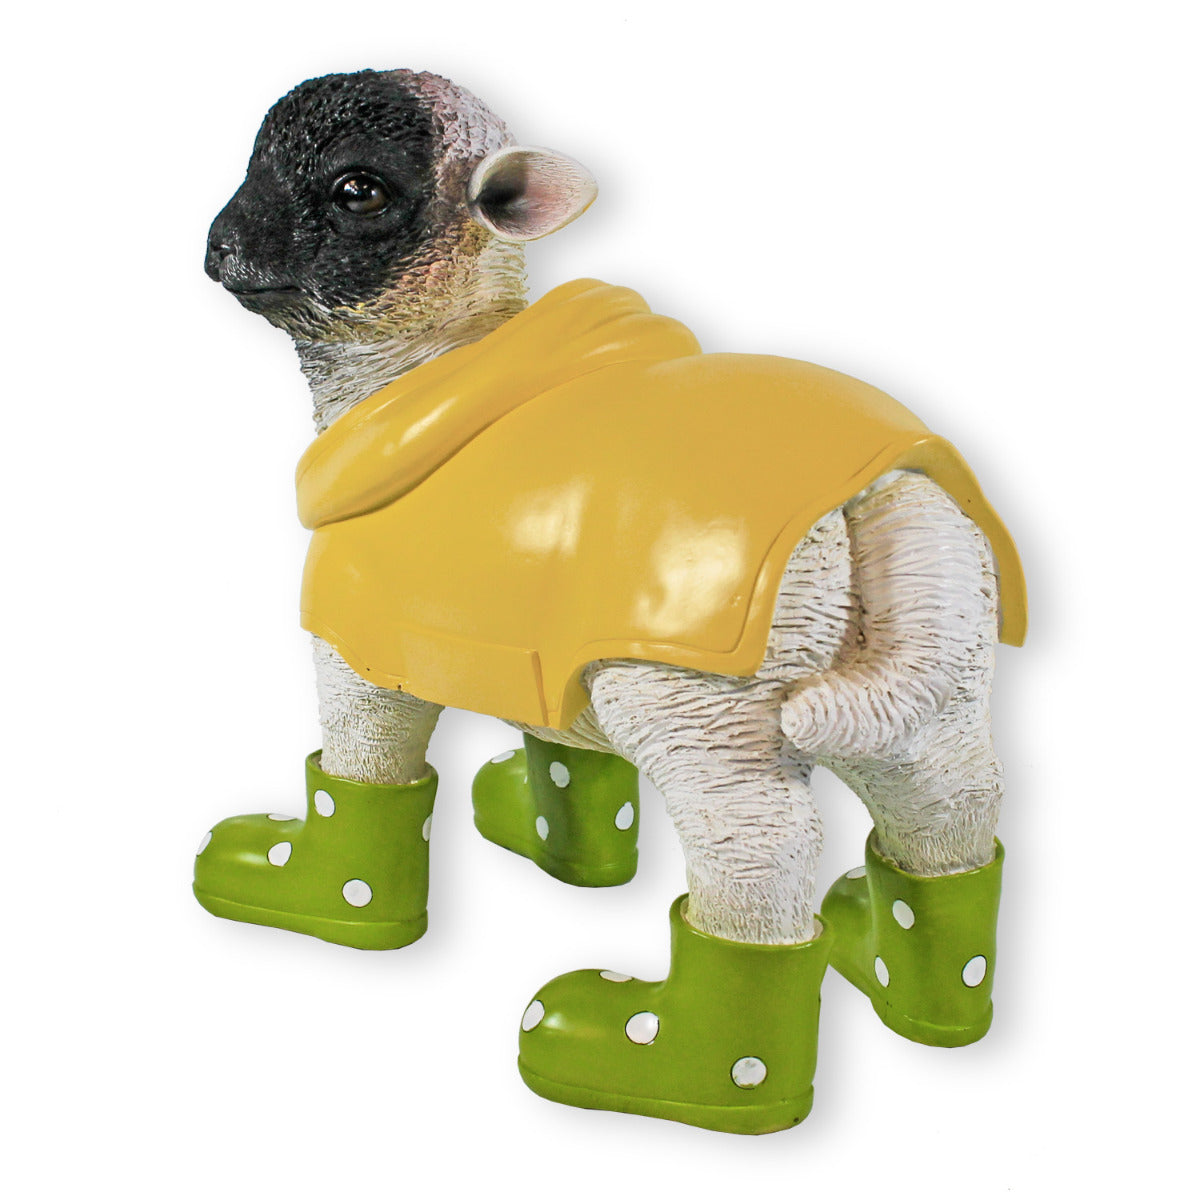 Gartenfigur Schaf mit Gummistiefeln gruen und Regenmantel Lamm Figur Garten Dekofigur Lamm